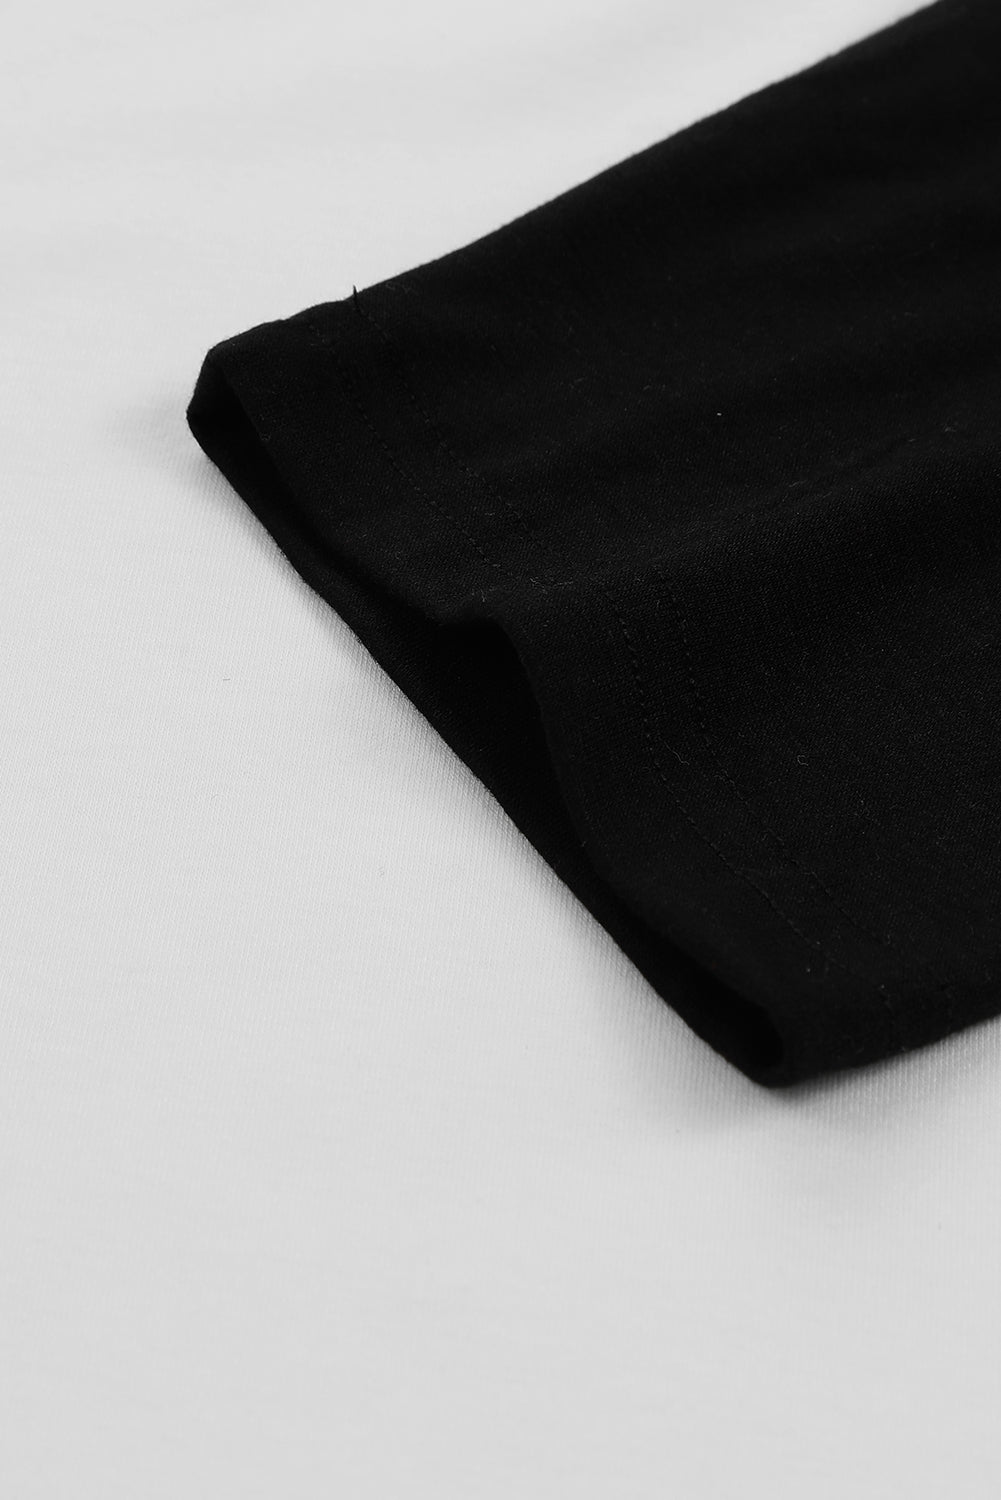 Pulover z raglan rokavi v črni barvi